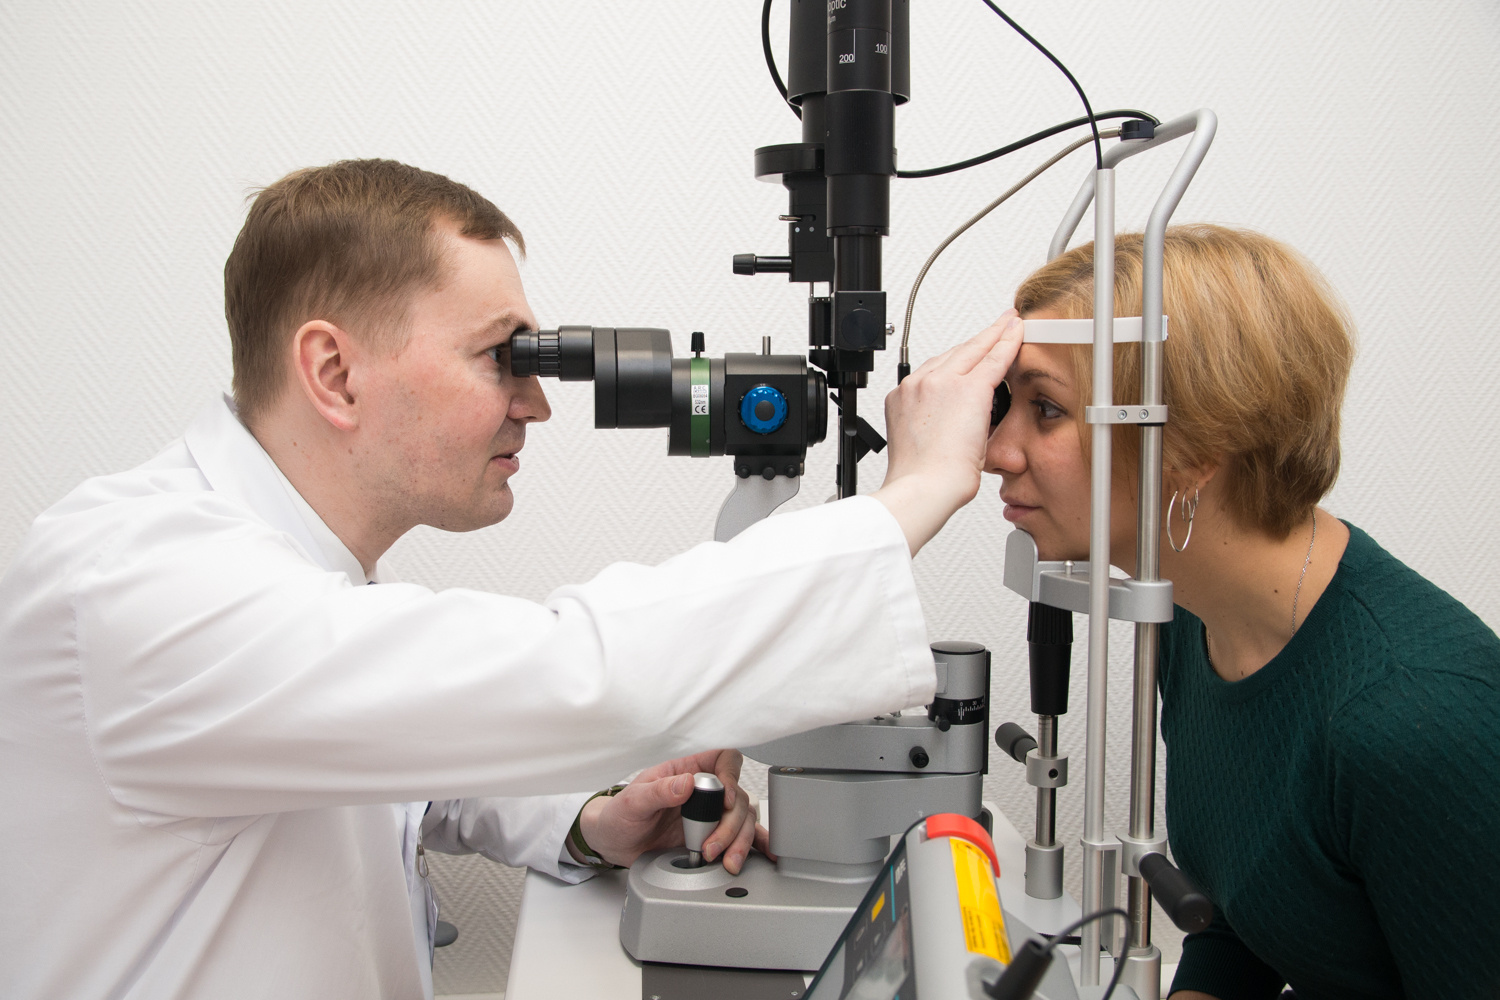 Осмотр глазного дна на «широком»
зрачке способен выявить в начальной стадии такие патологии, как гипертония,
сахарный диабет и др.